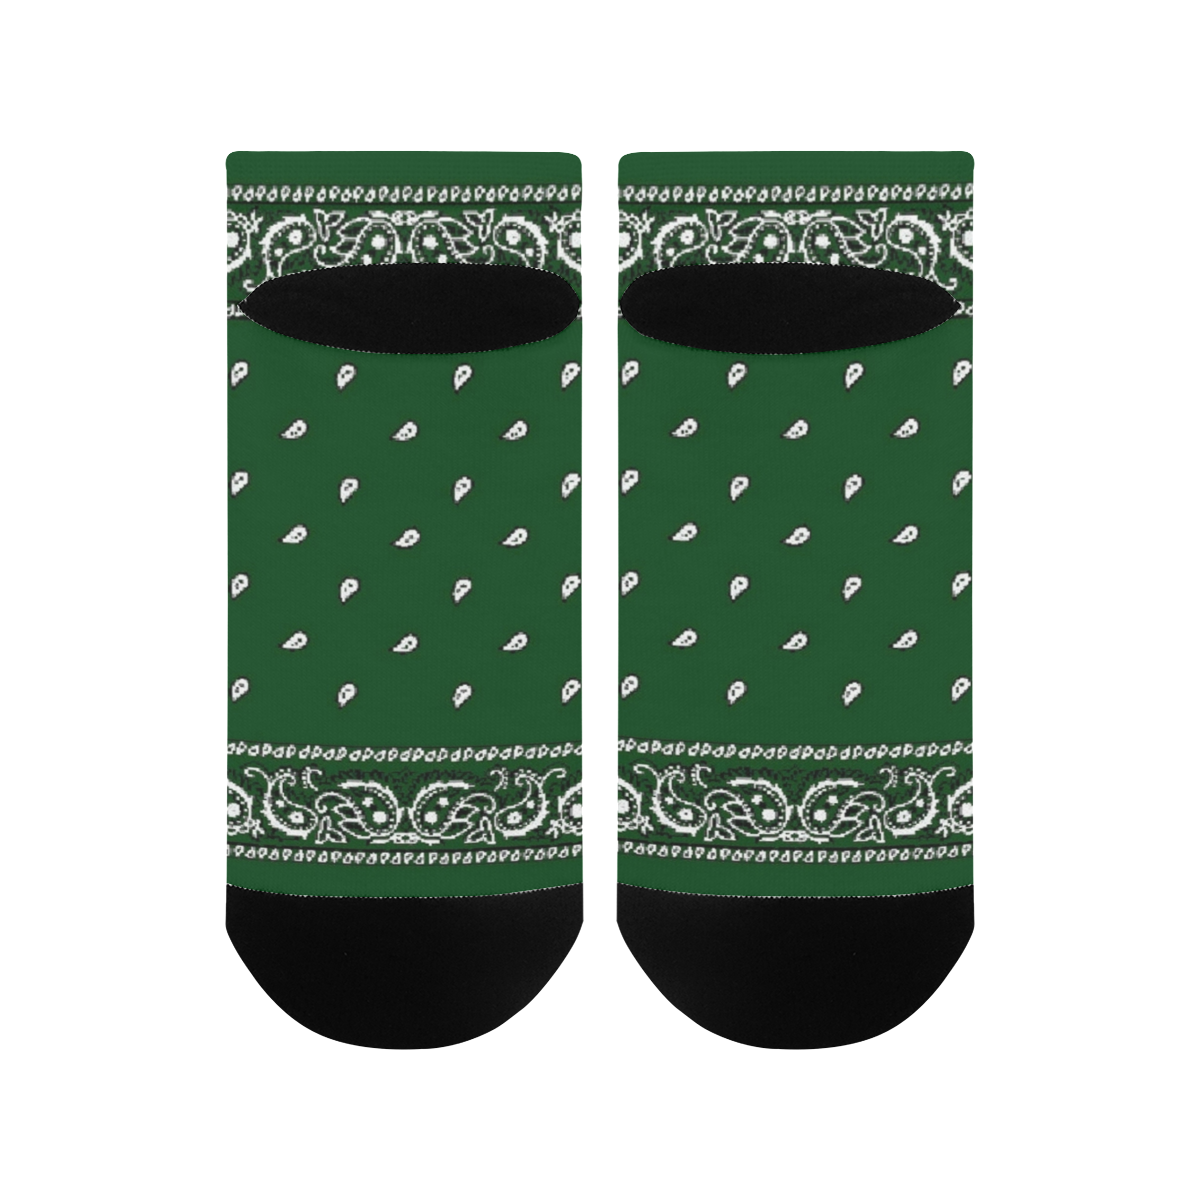 KERCHIEF PATTERN GREEN Men's Ankle Socks